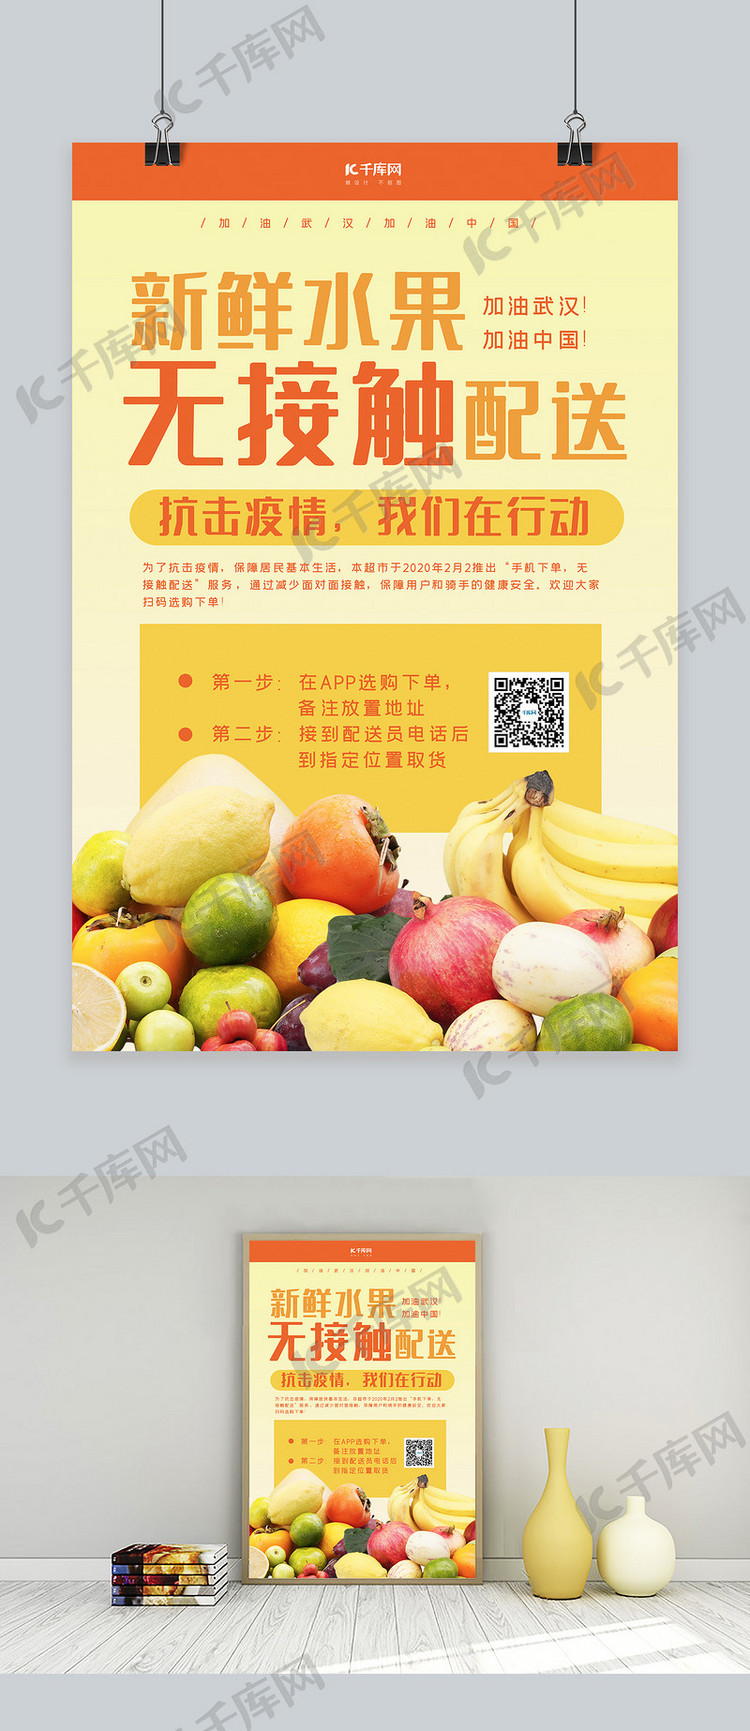 无接触配送水果配送橙黄色简约海报